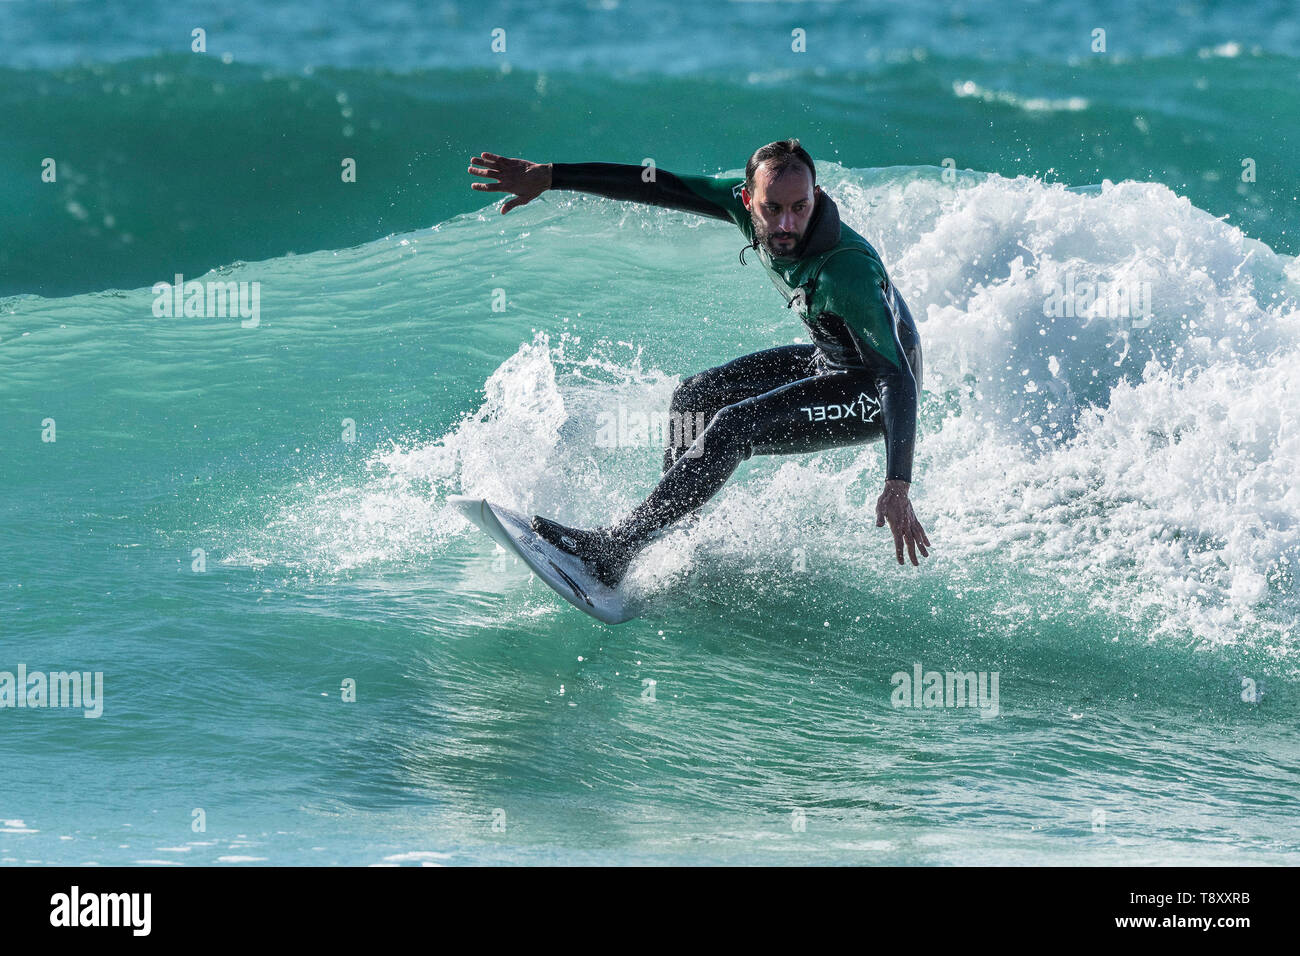 Action surf spectaculaire en tant que surfer en portant une combinaison Xcel rides une vague dans une mer couleur de jade dans Fistral à Newquay en Cornouailles. Banque D'Images